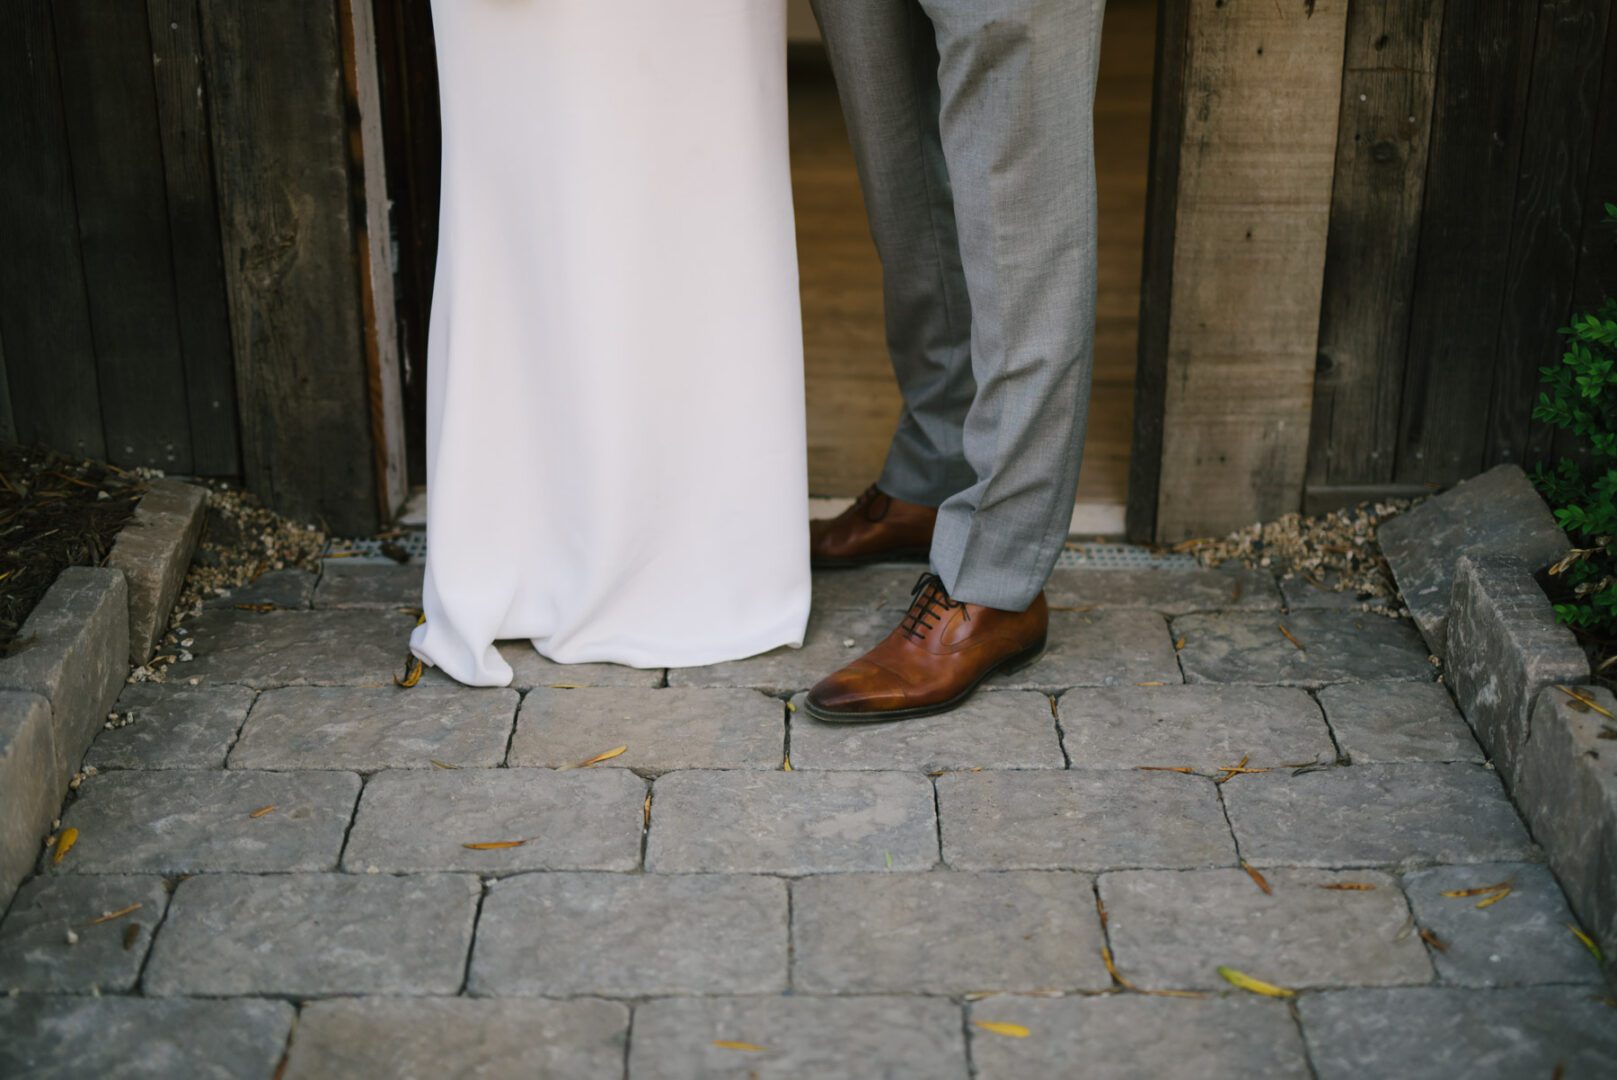 A bride and groom standing in front of a door.